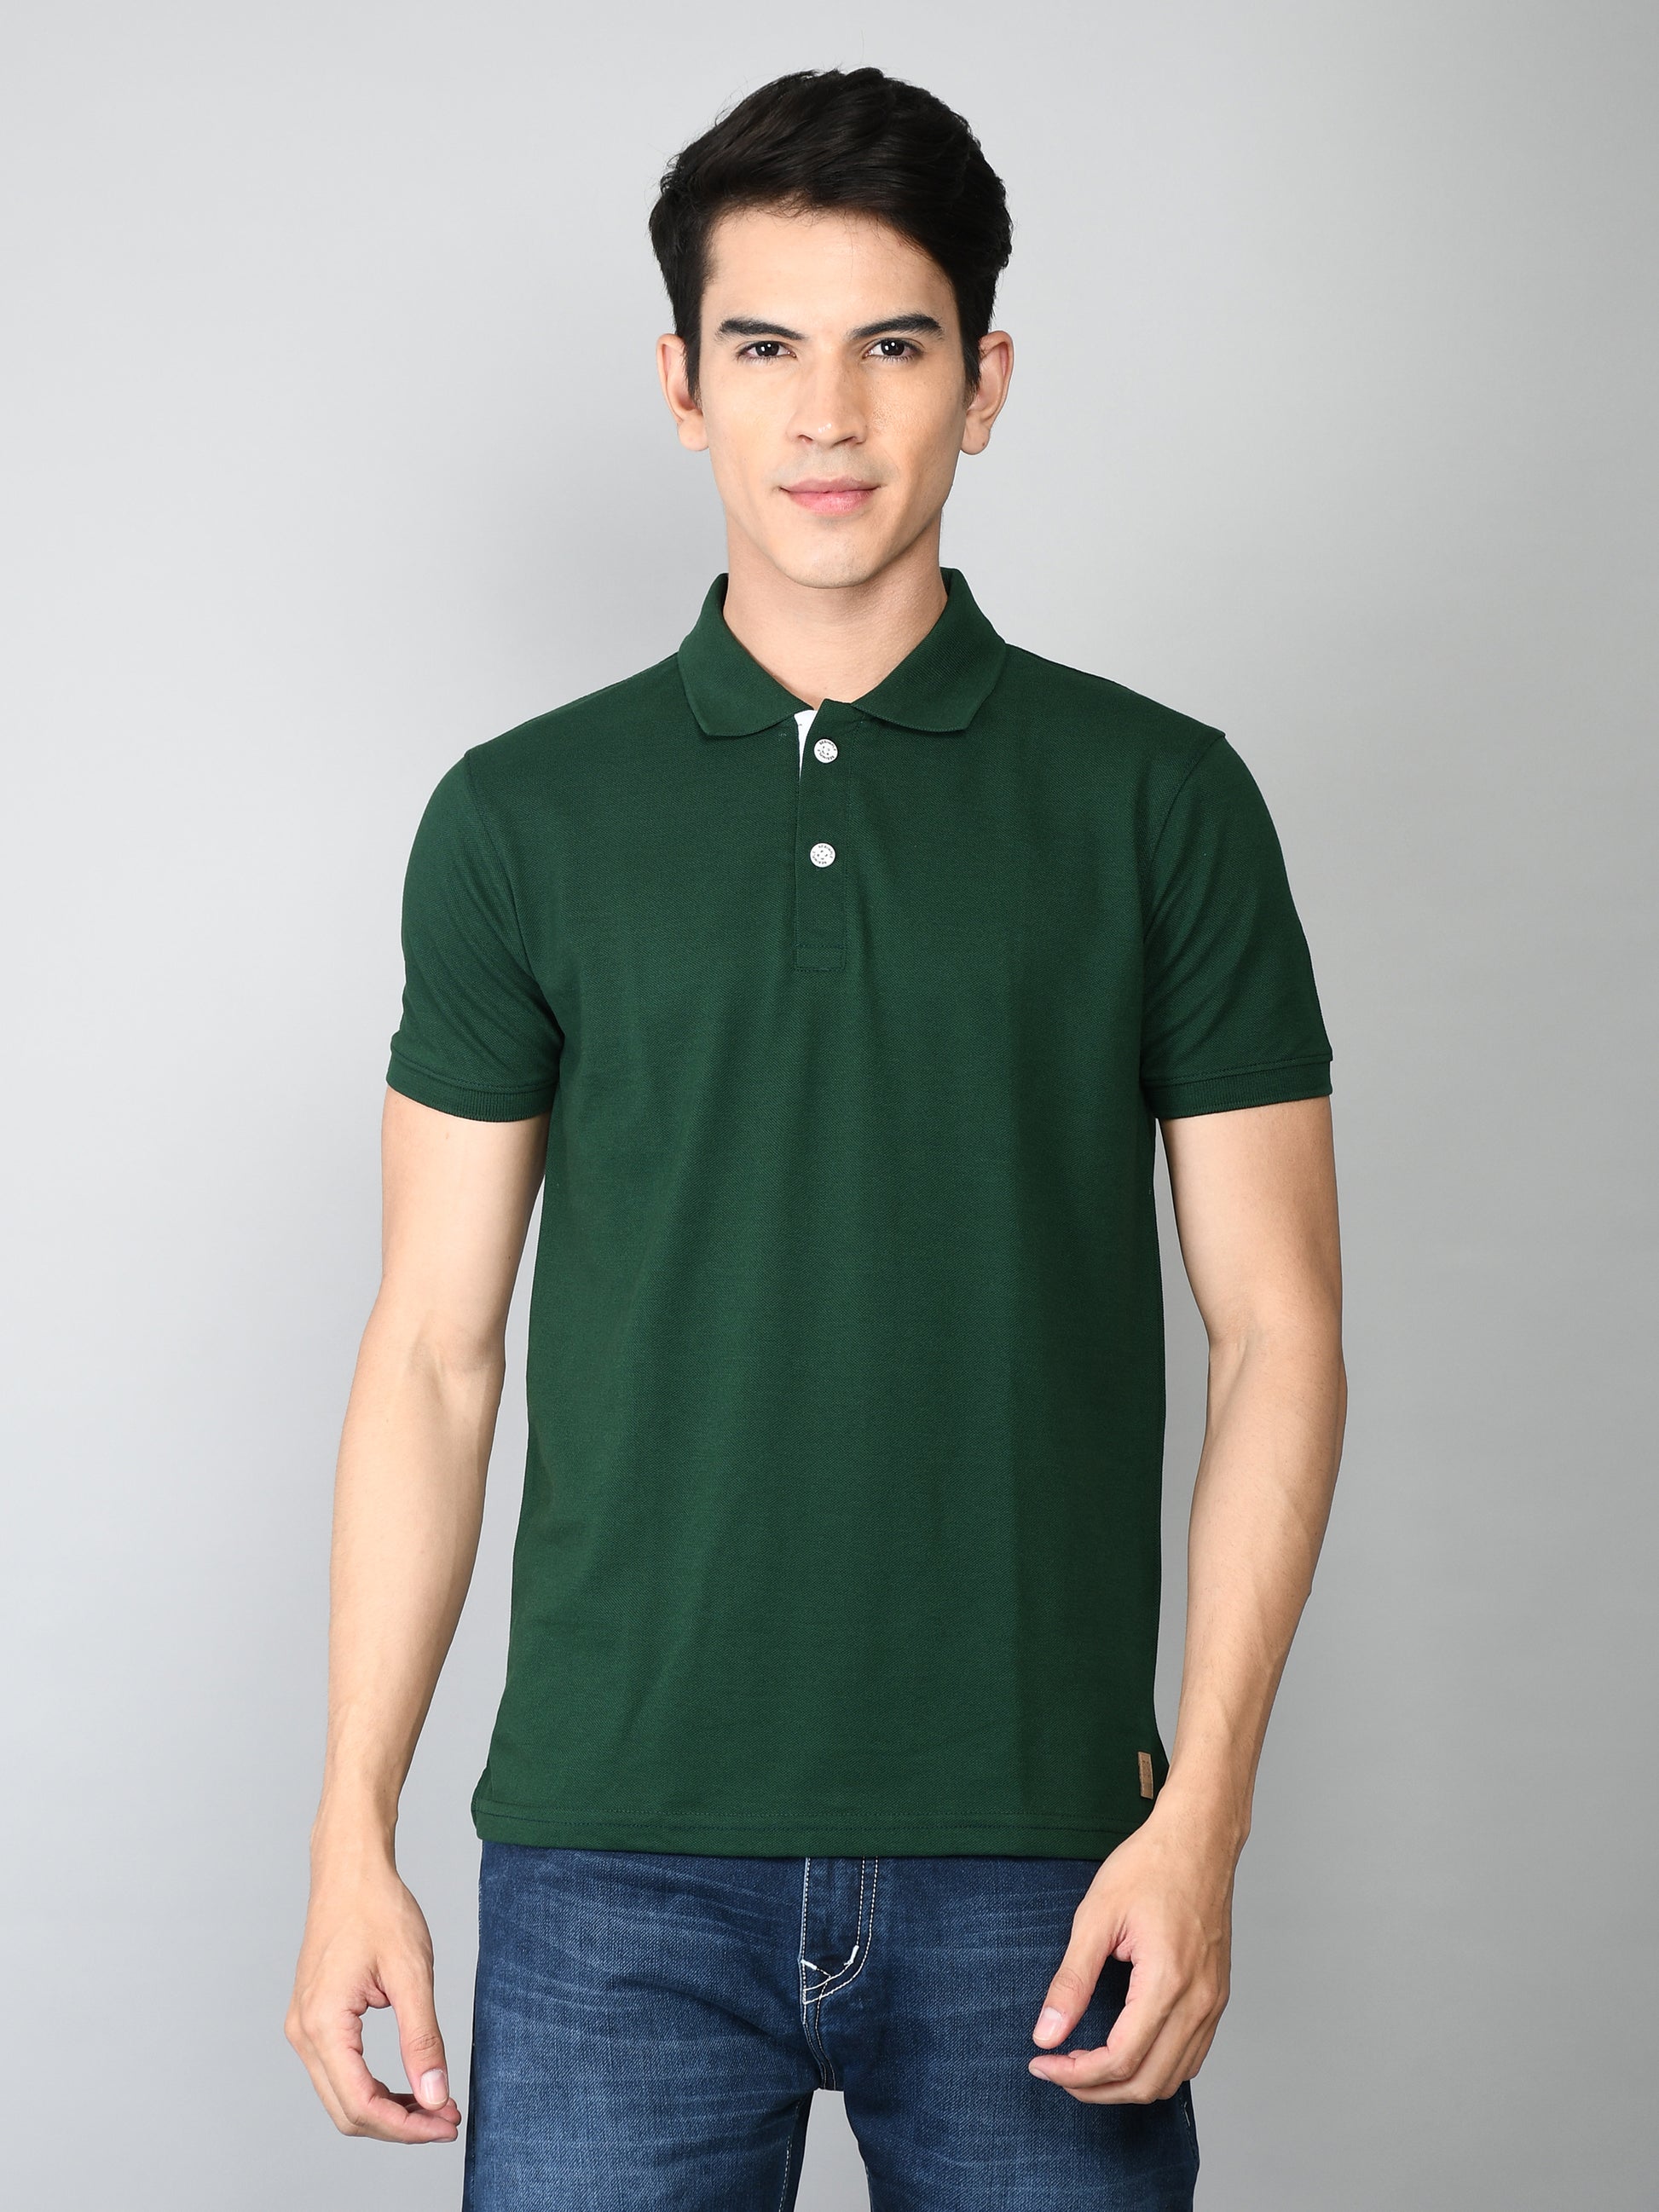 Golfer Polo T-Shirt for Men: Bottle Green